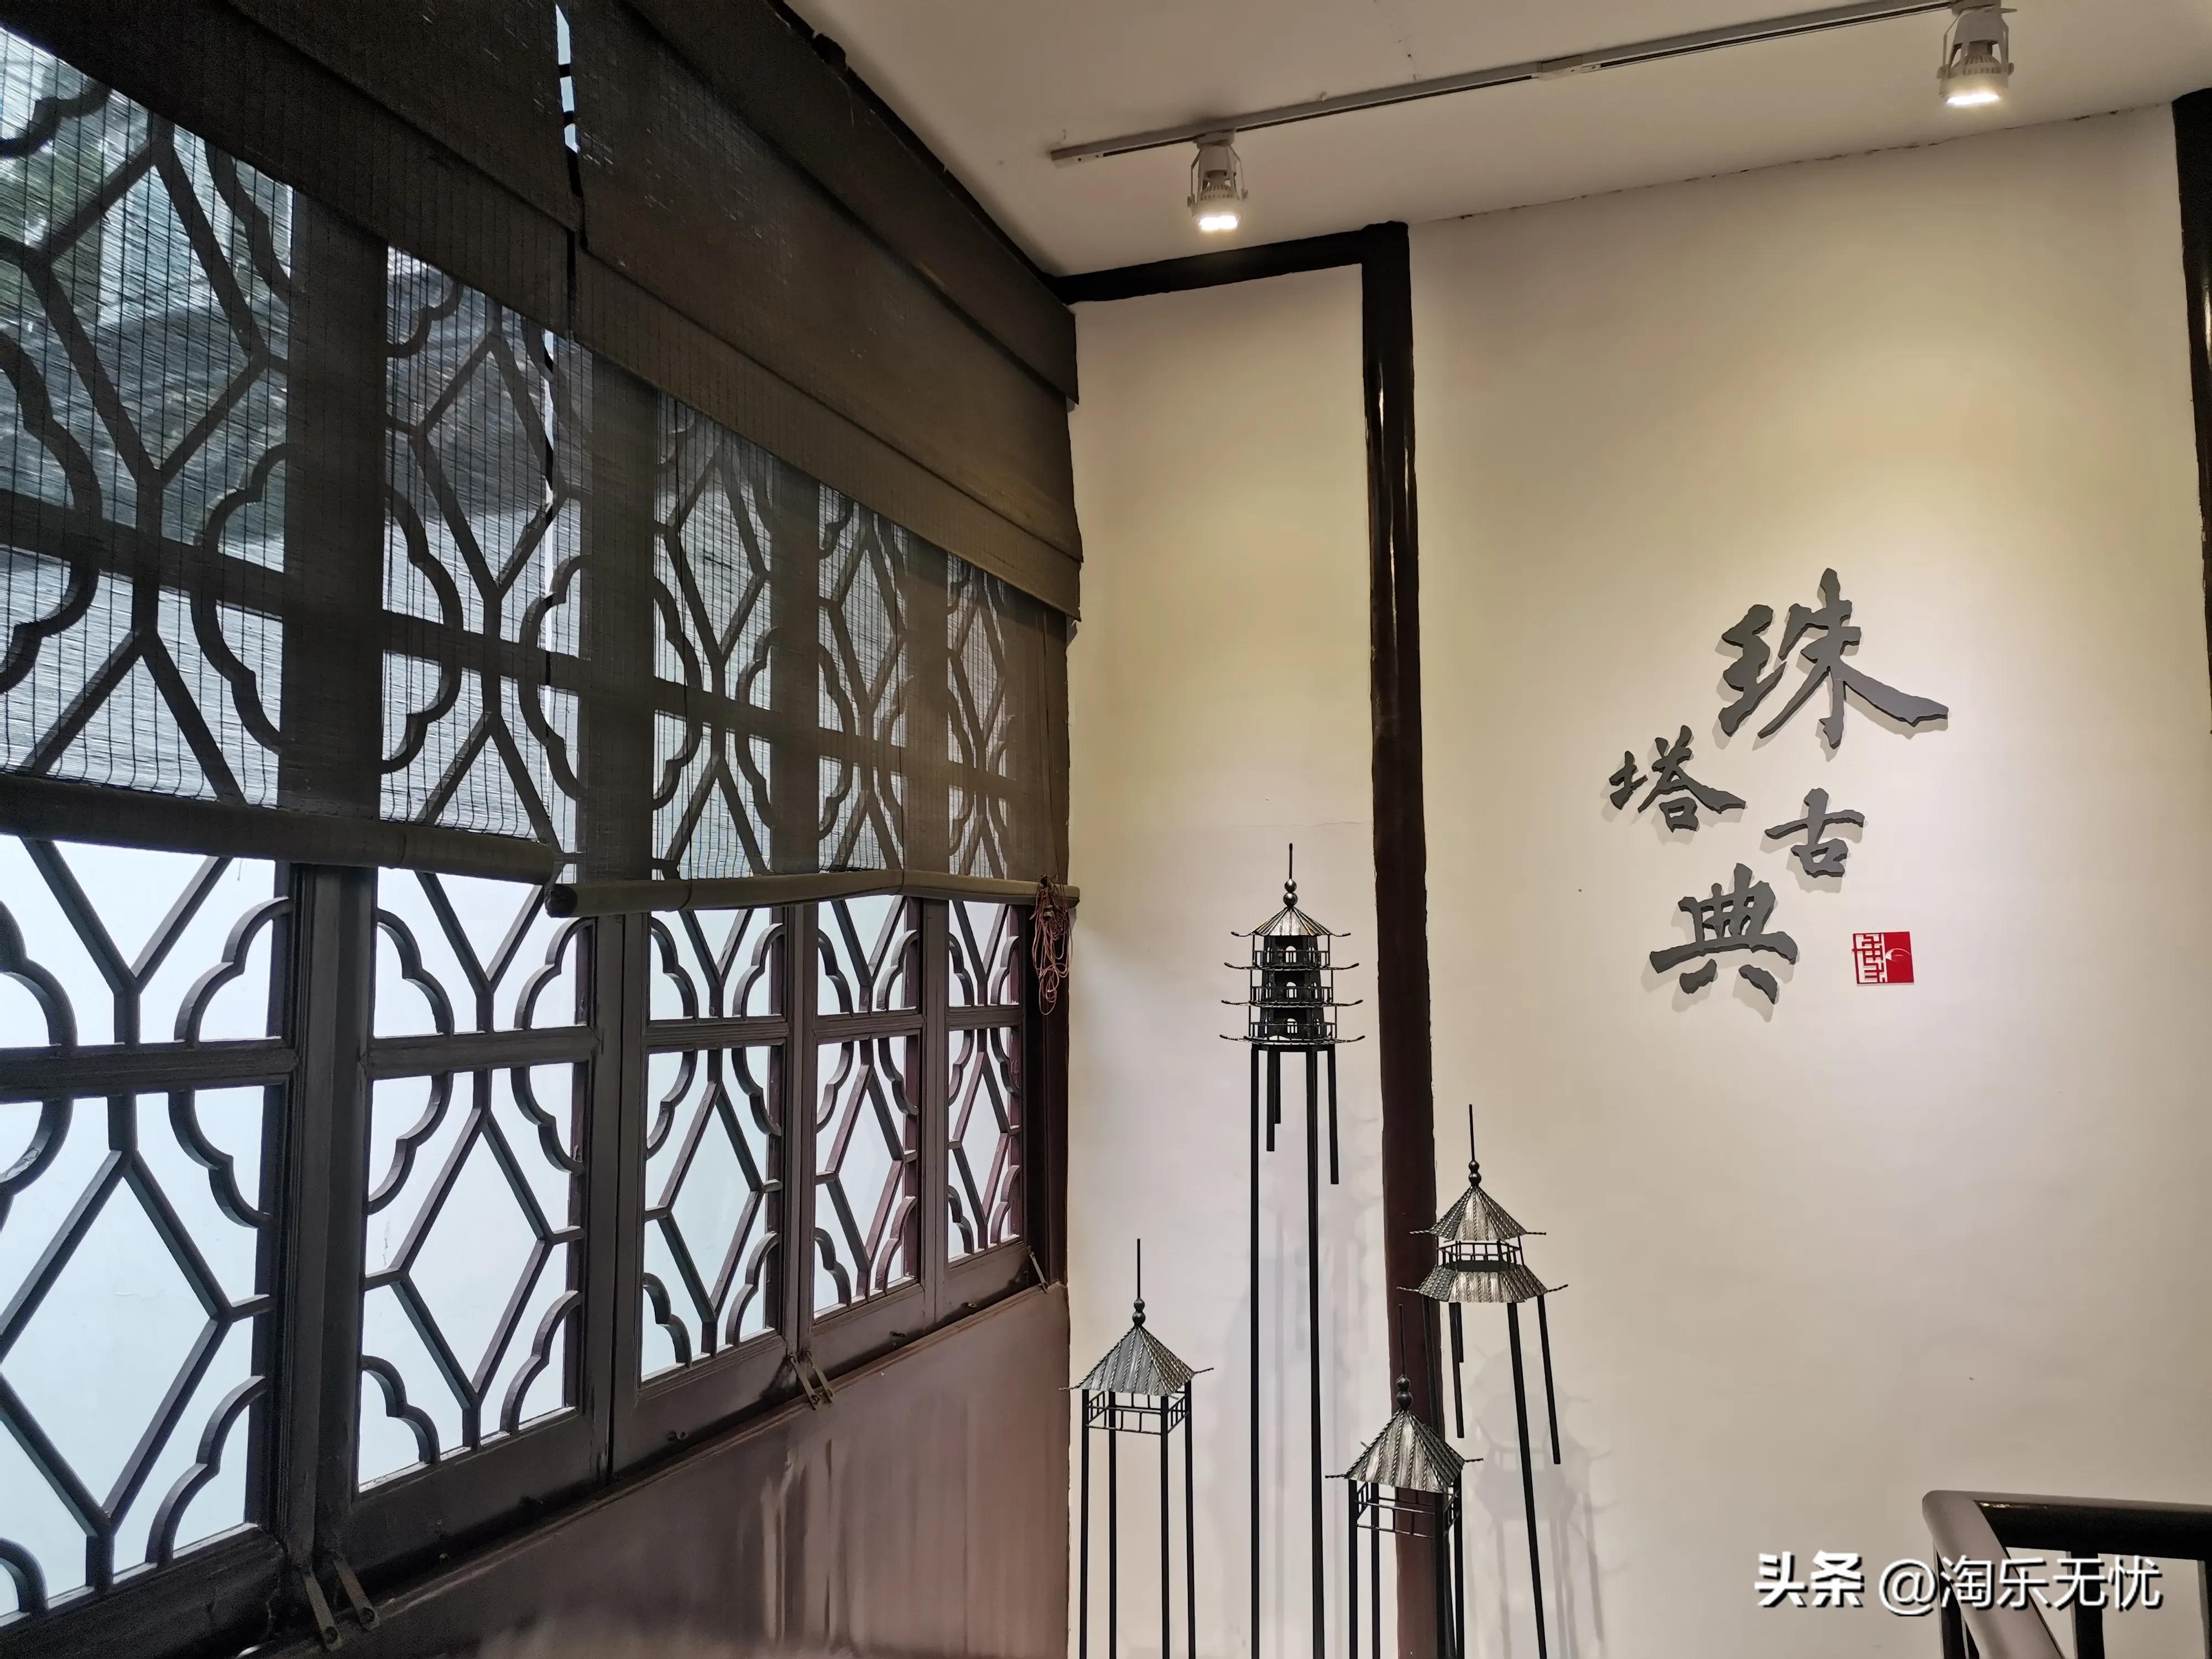 在苏州平江历史文化街区来一次穿越时空的旅行